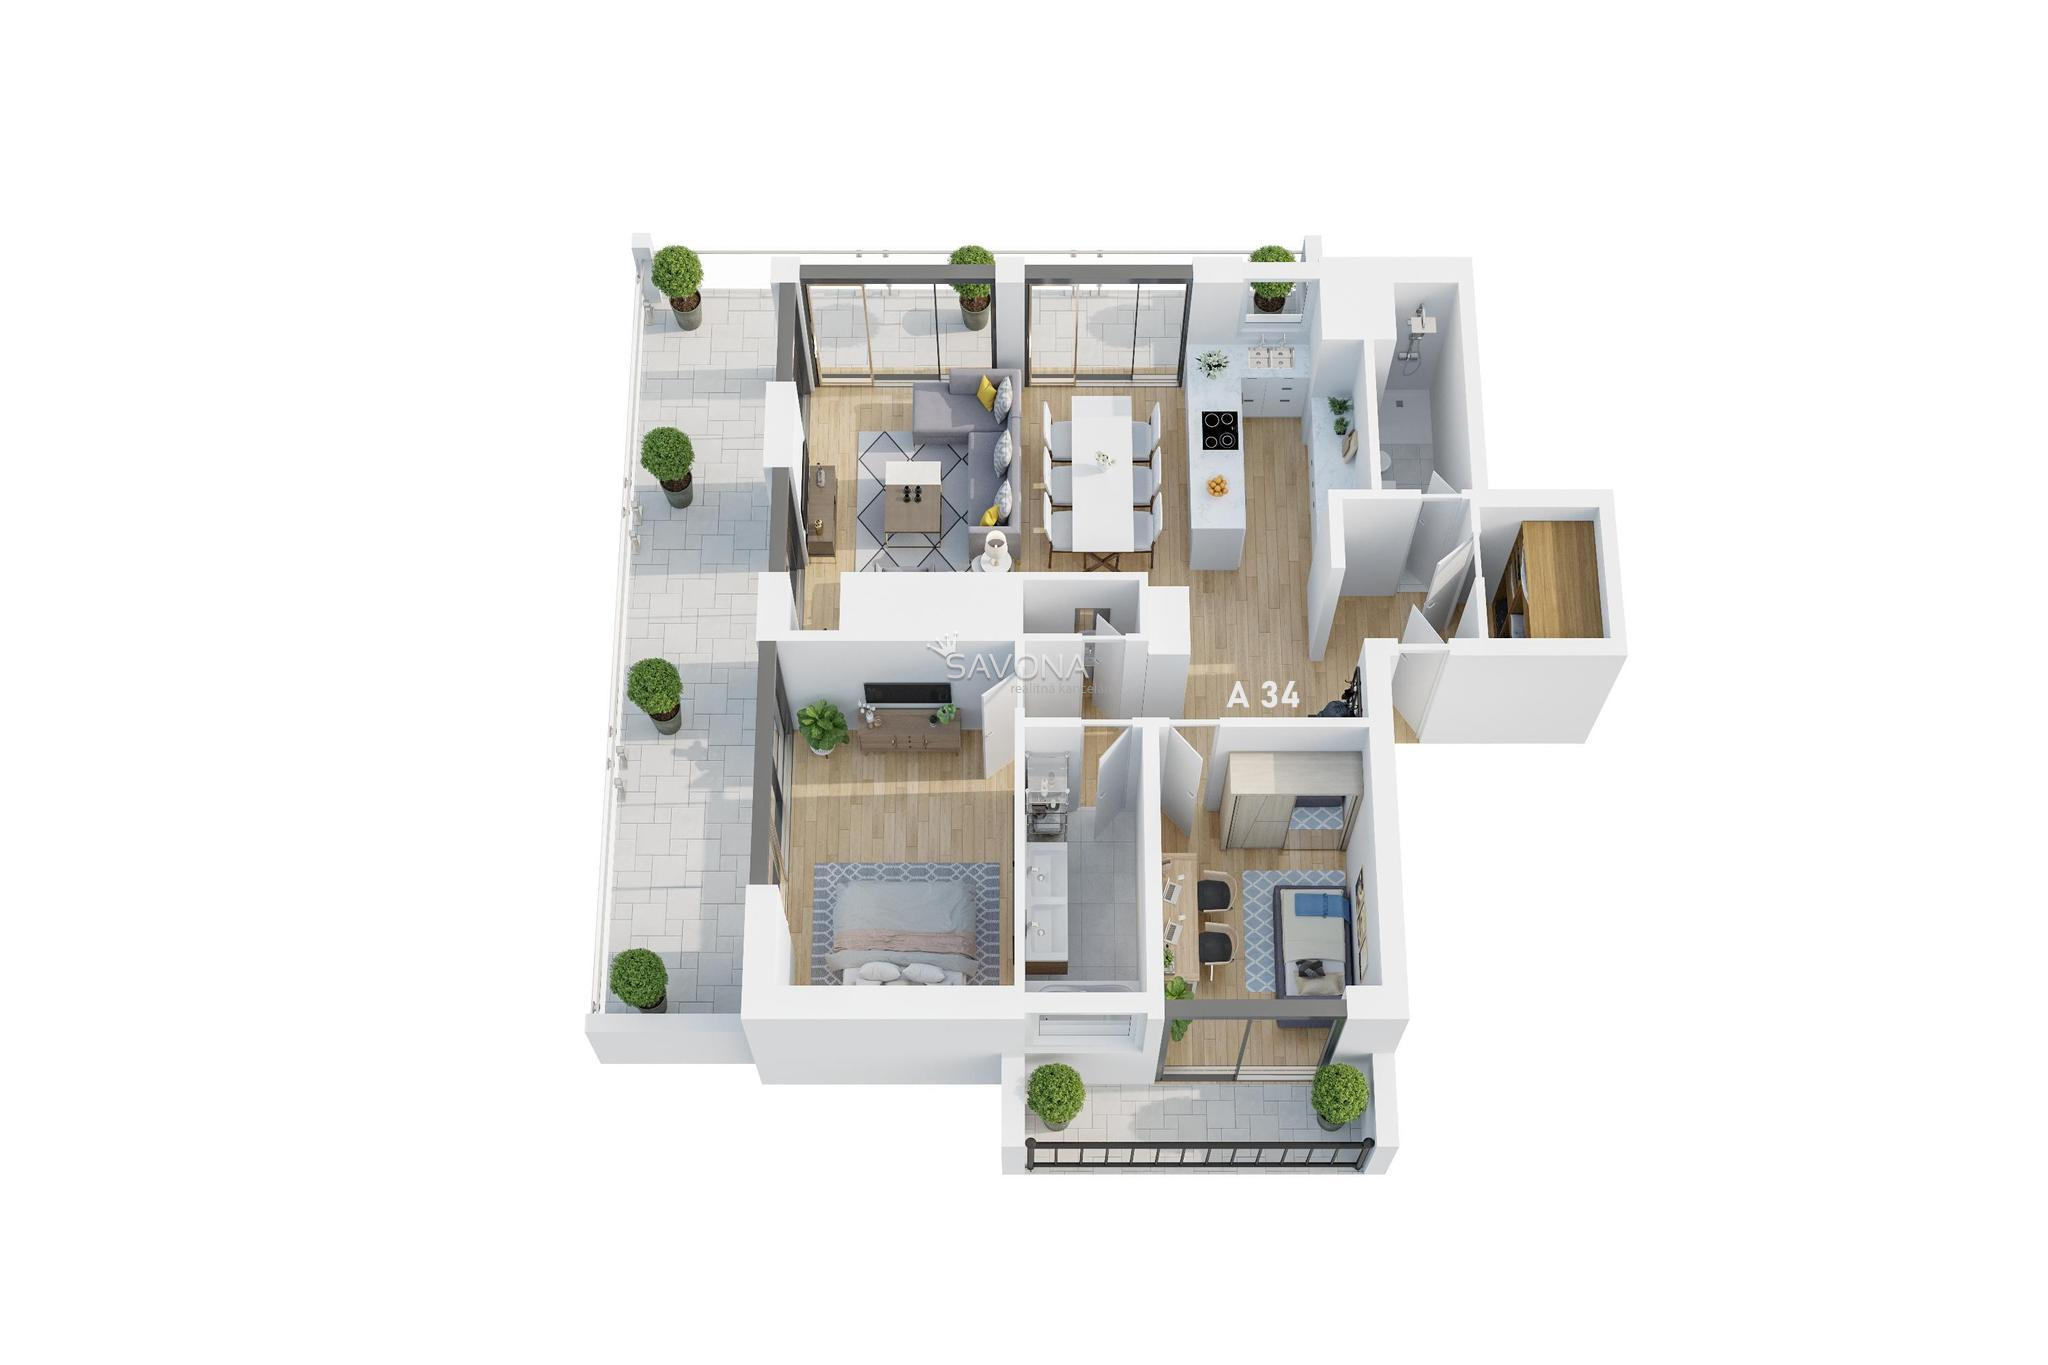 PREDANÝ | 3 izbový byt s terasou | A 34 - 143 m2 - 6 NP - LUNA RESIDENCE POPRAD